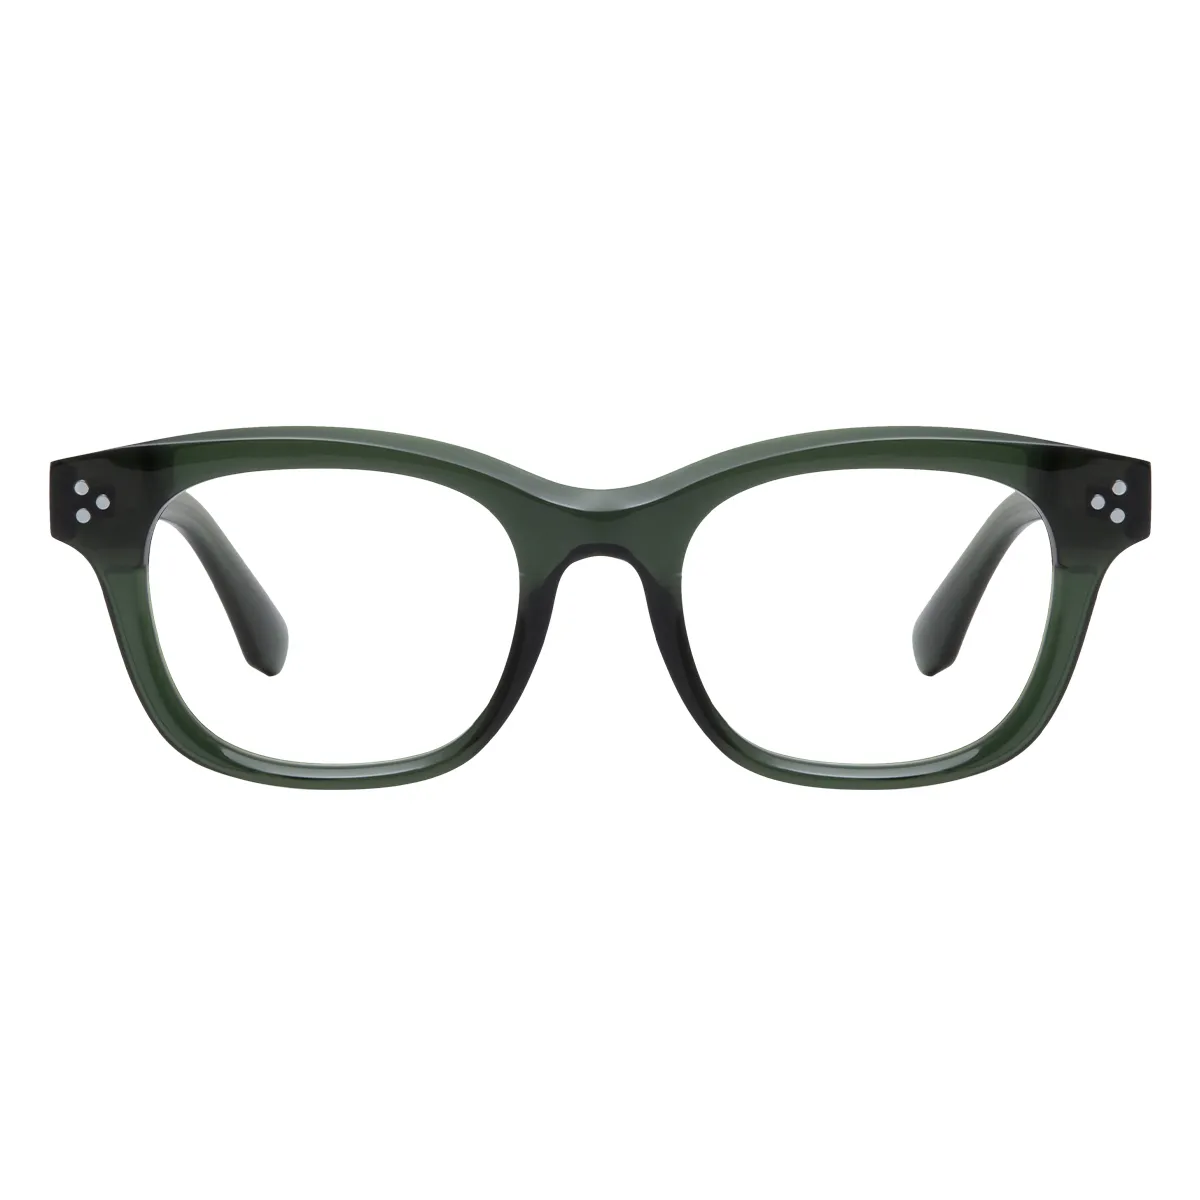 Yoland - Square Green Glasses for Men & Women